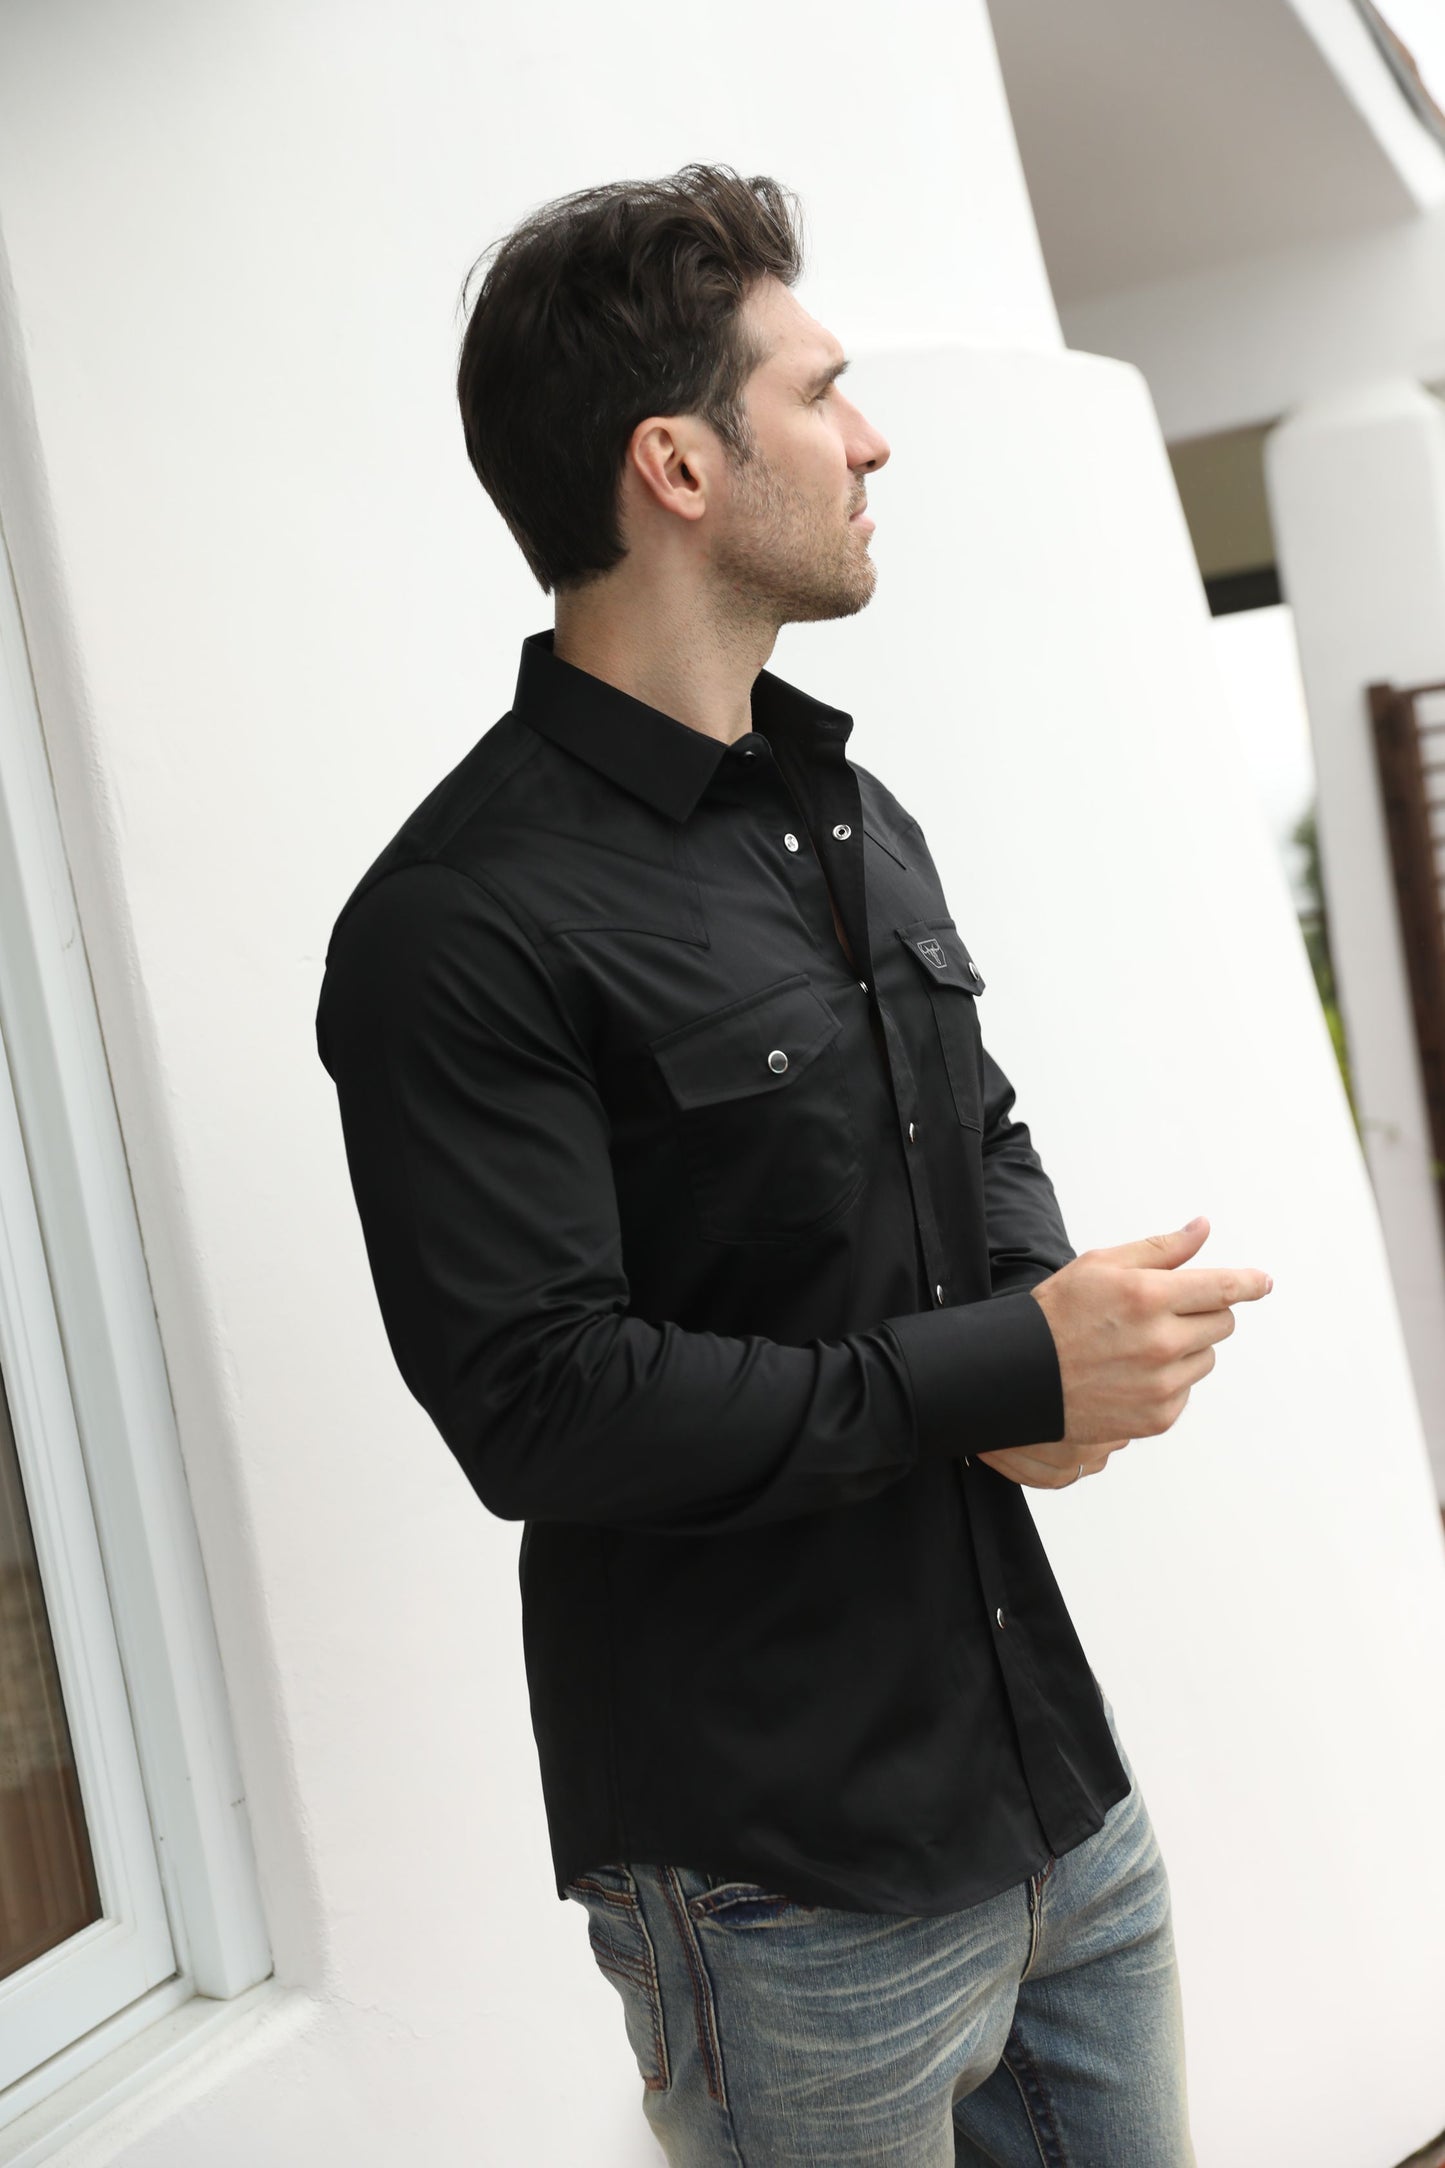 Men's Modern Fit Solid Black Dress Shirt